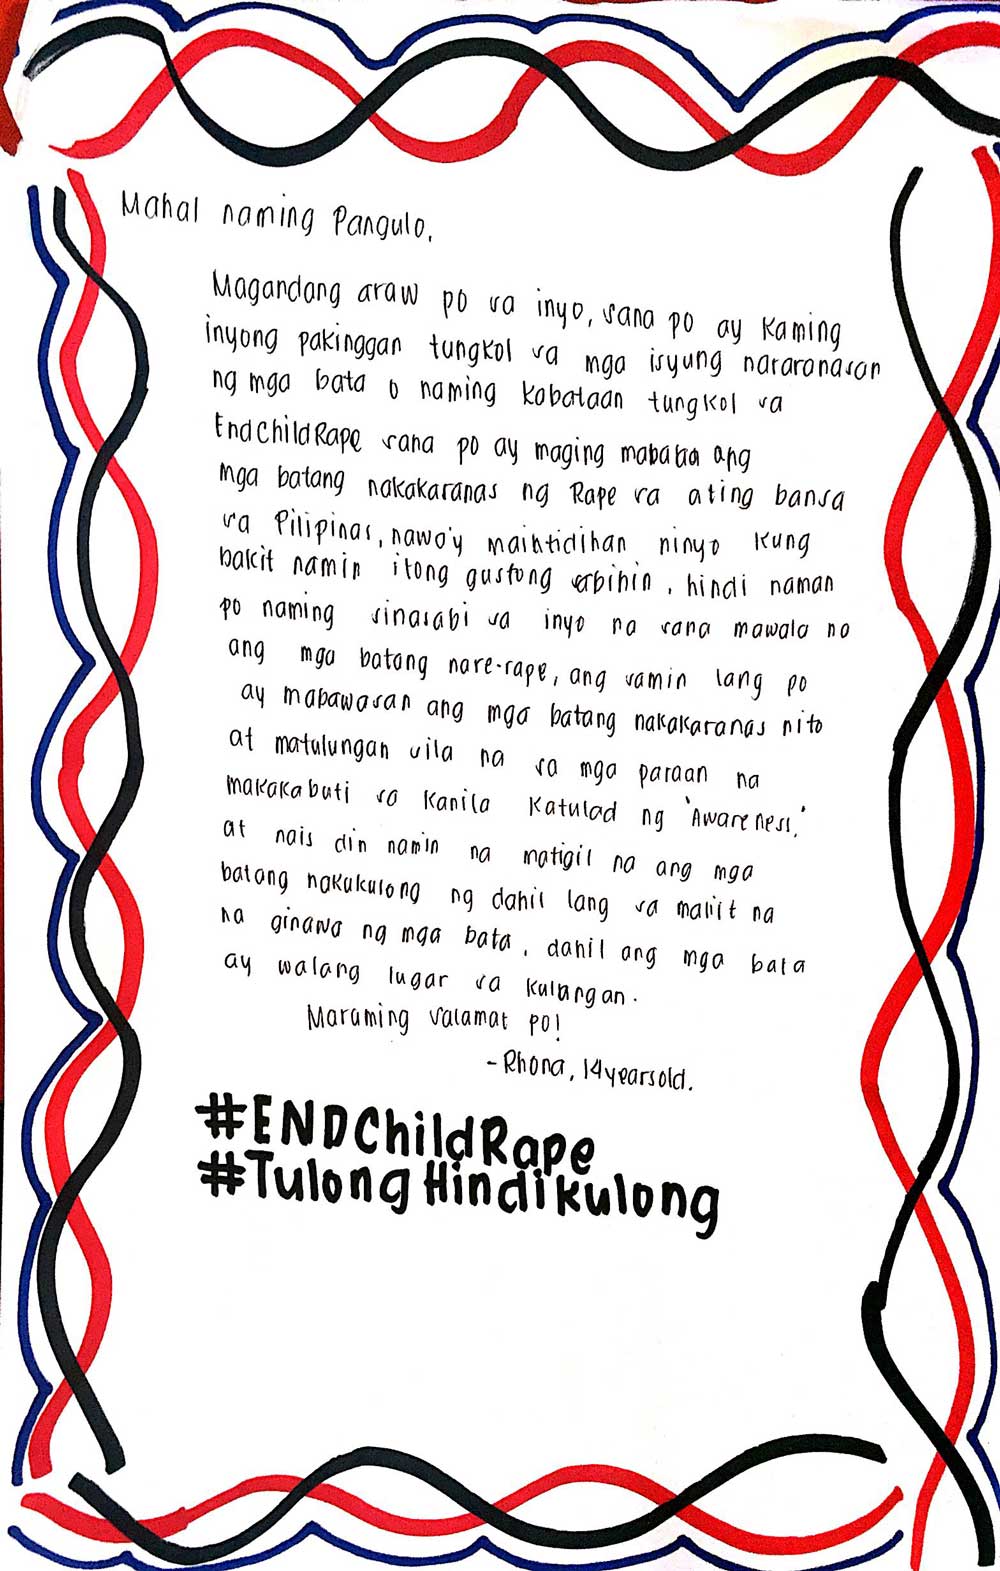 Letter to President Duterte from Rhona, 14